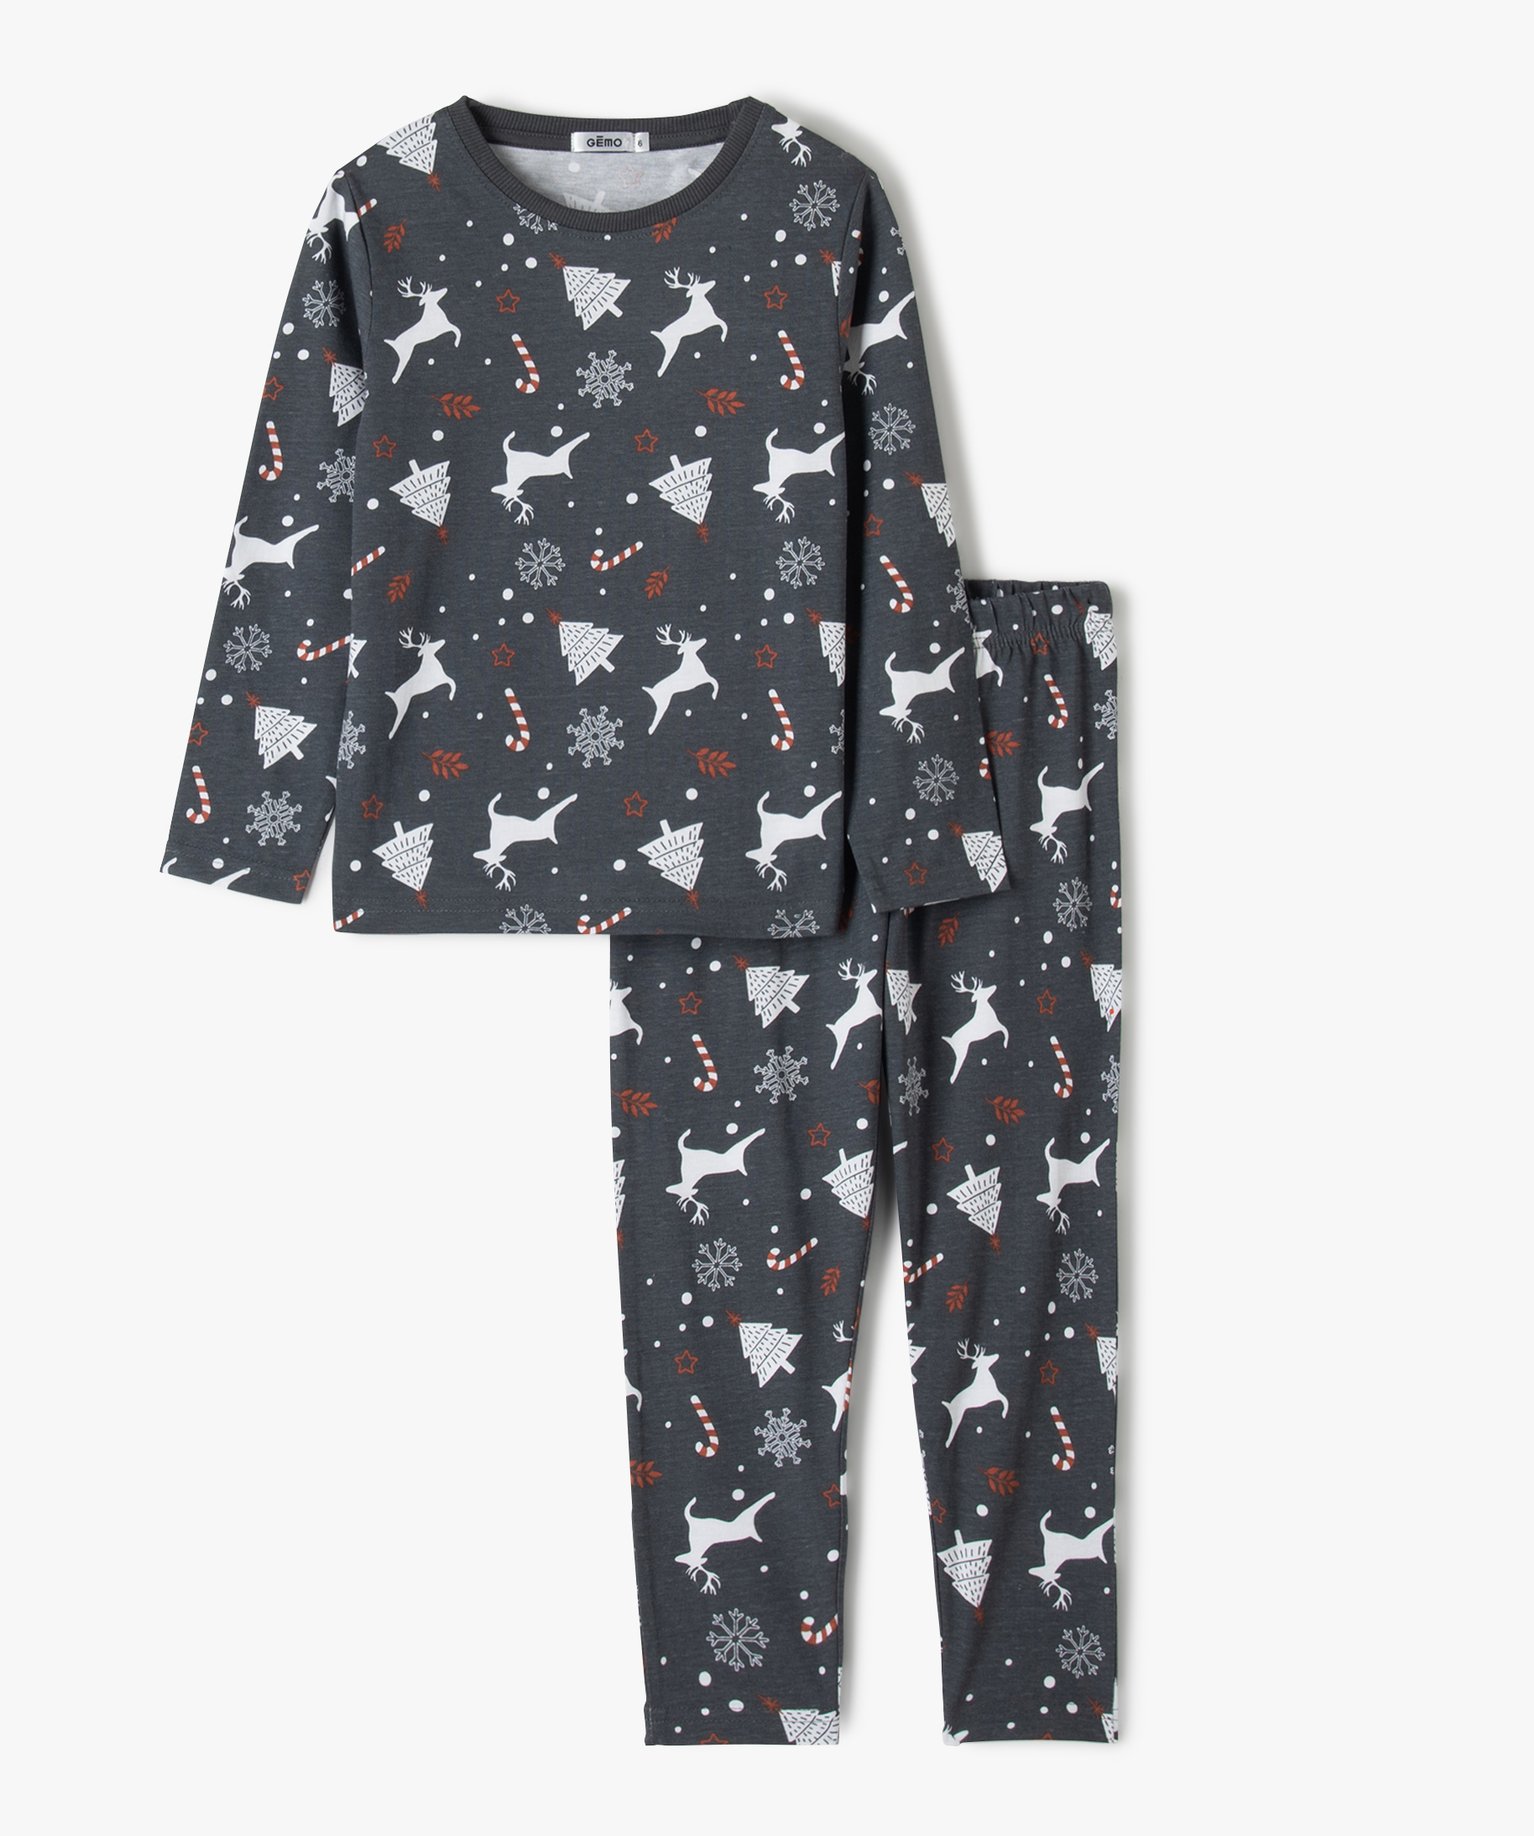 Pyjama de Noël garçon en jersey imprimé all over - GEMO